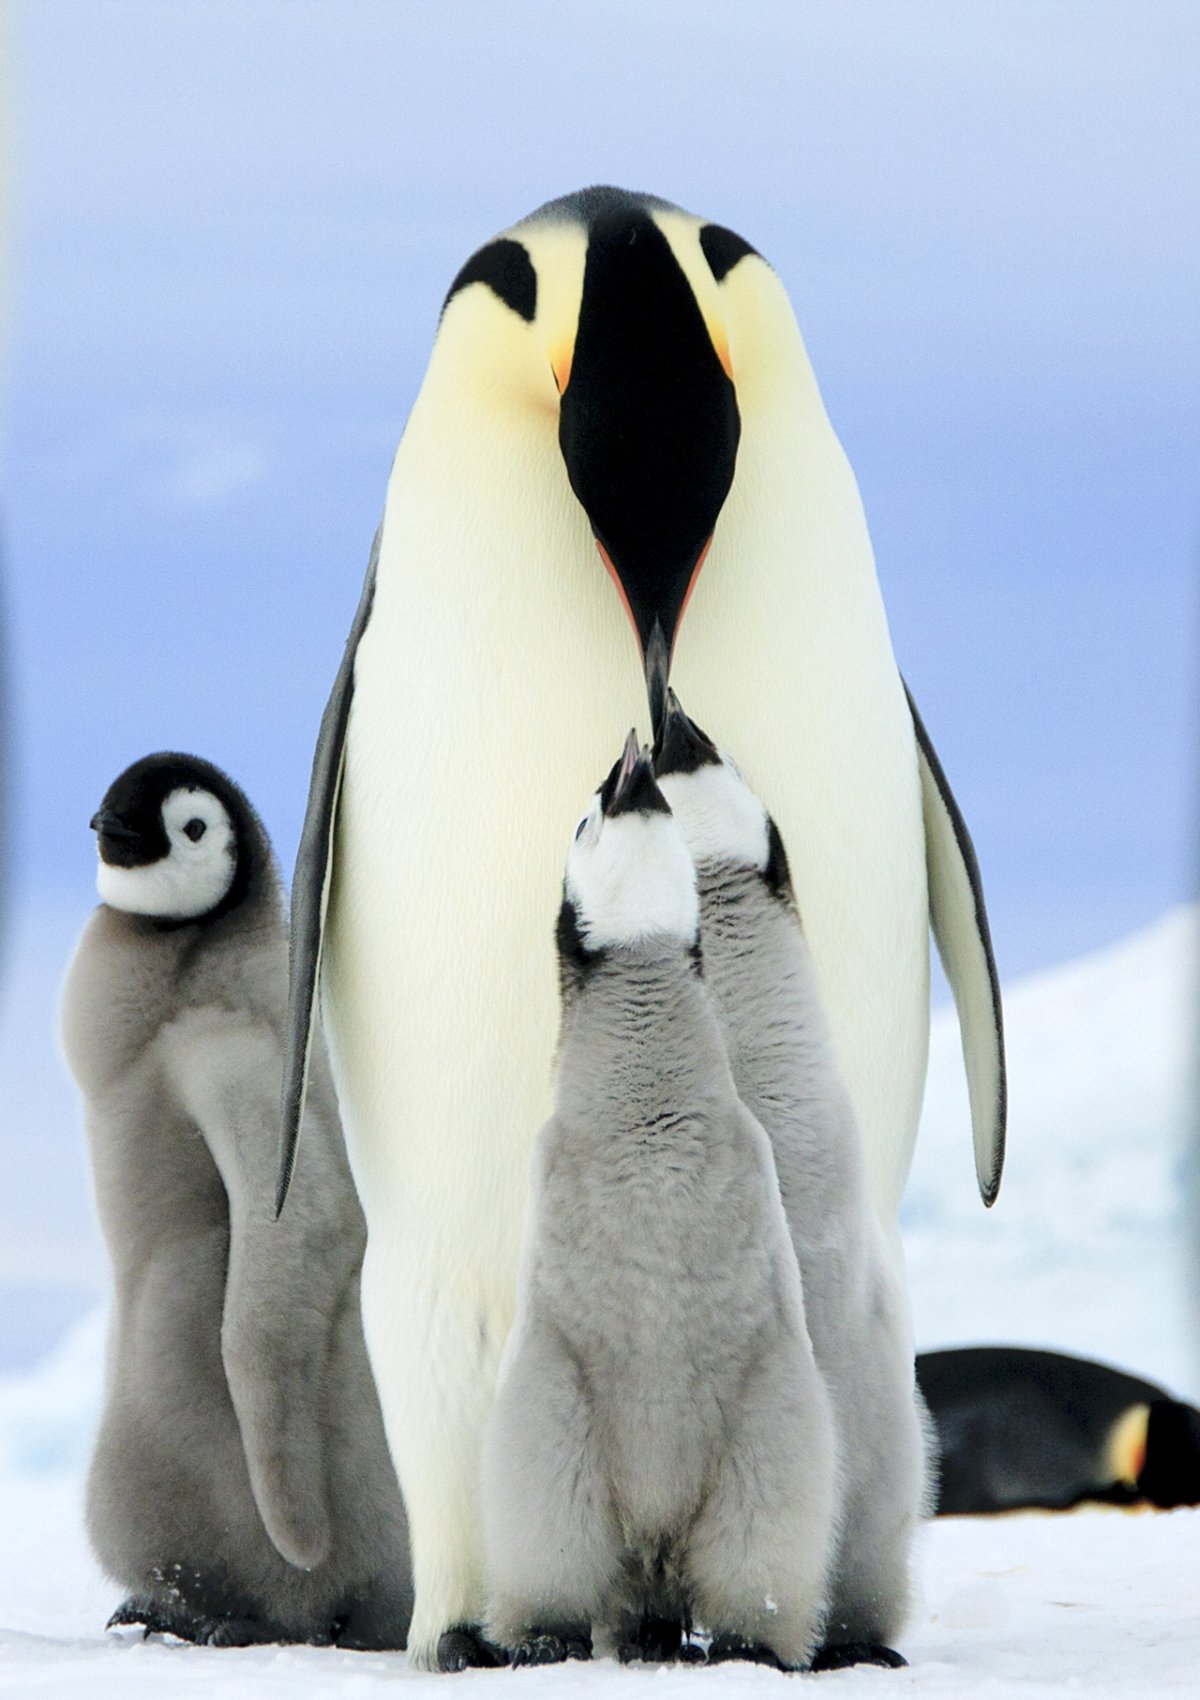 ФОТО: Три пингвина 2